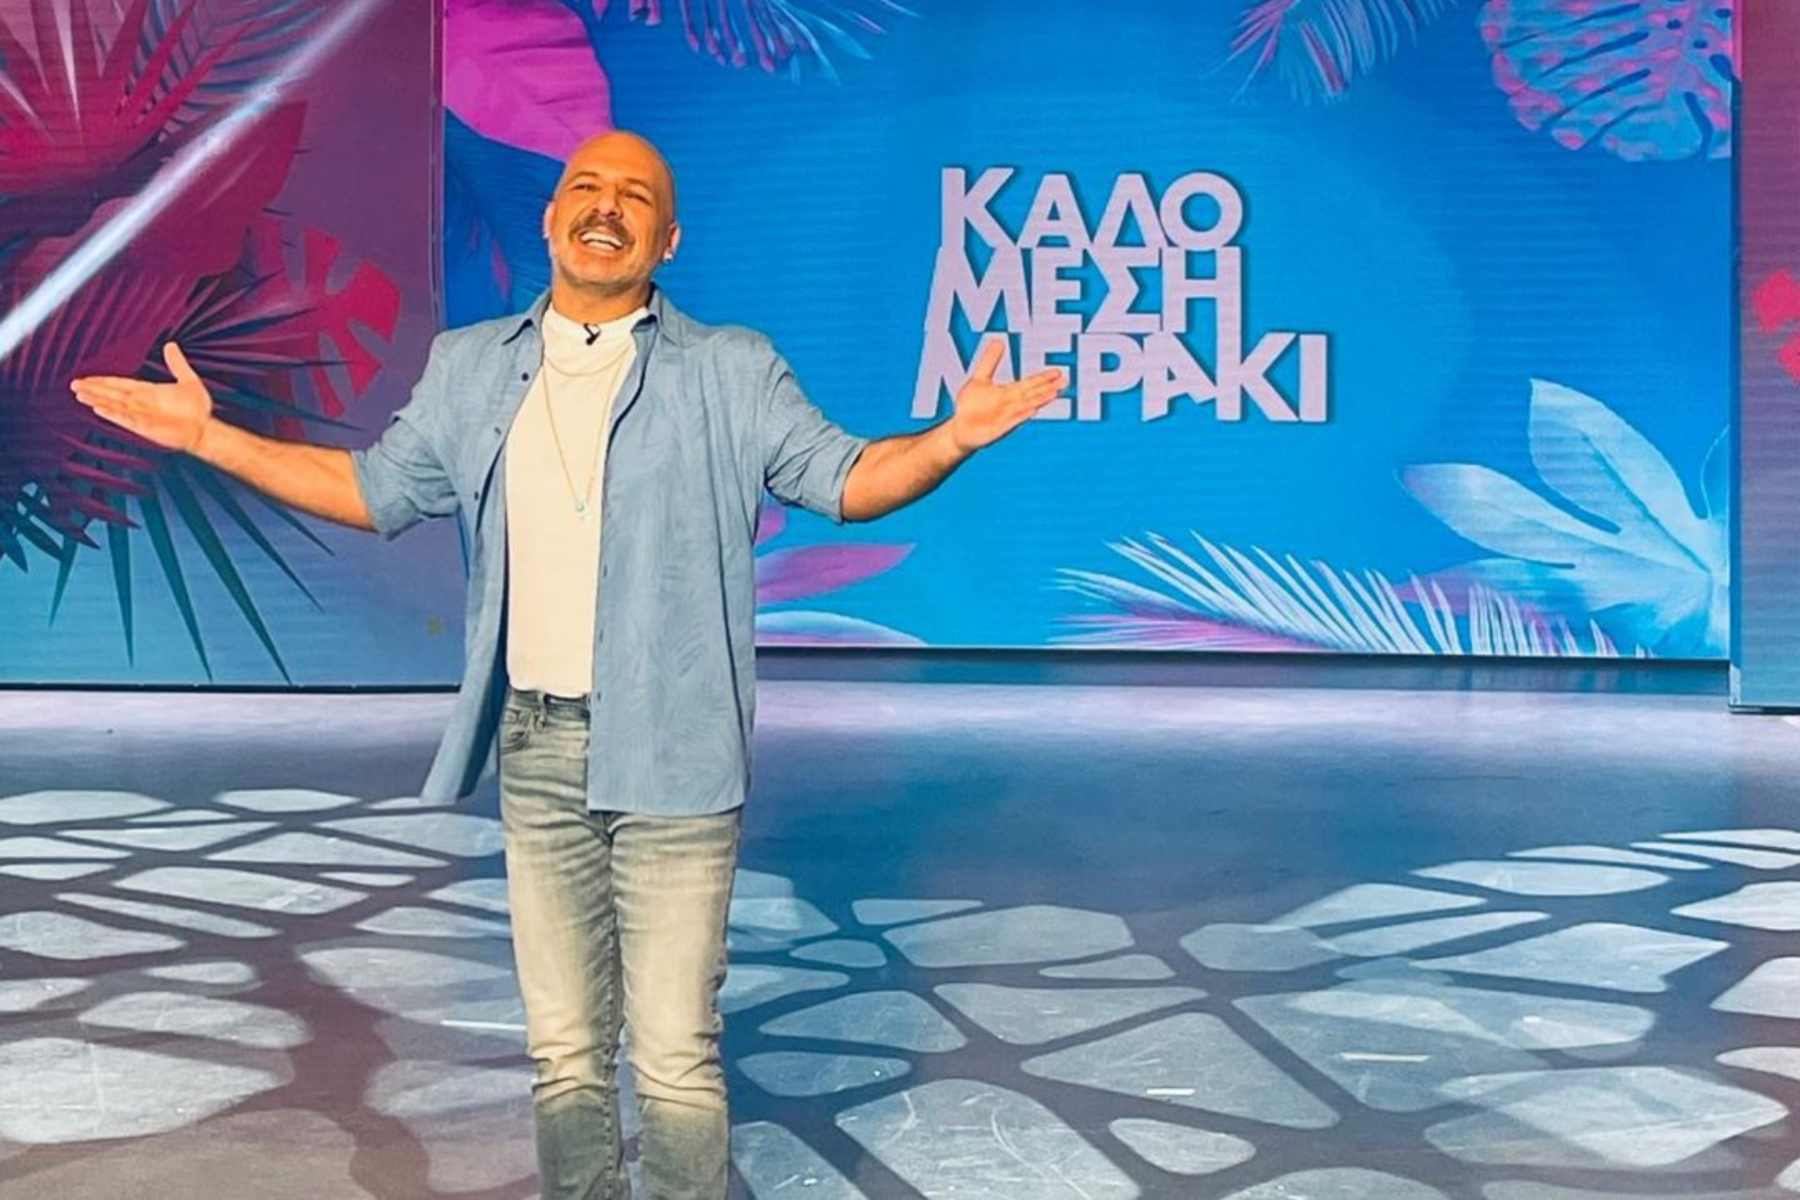 Νίκος Μουτσινάς: Με ζωντανό κοινό το Καλό Μεσημεράκι μετά από 27 μήνες